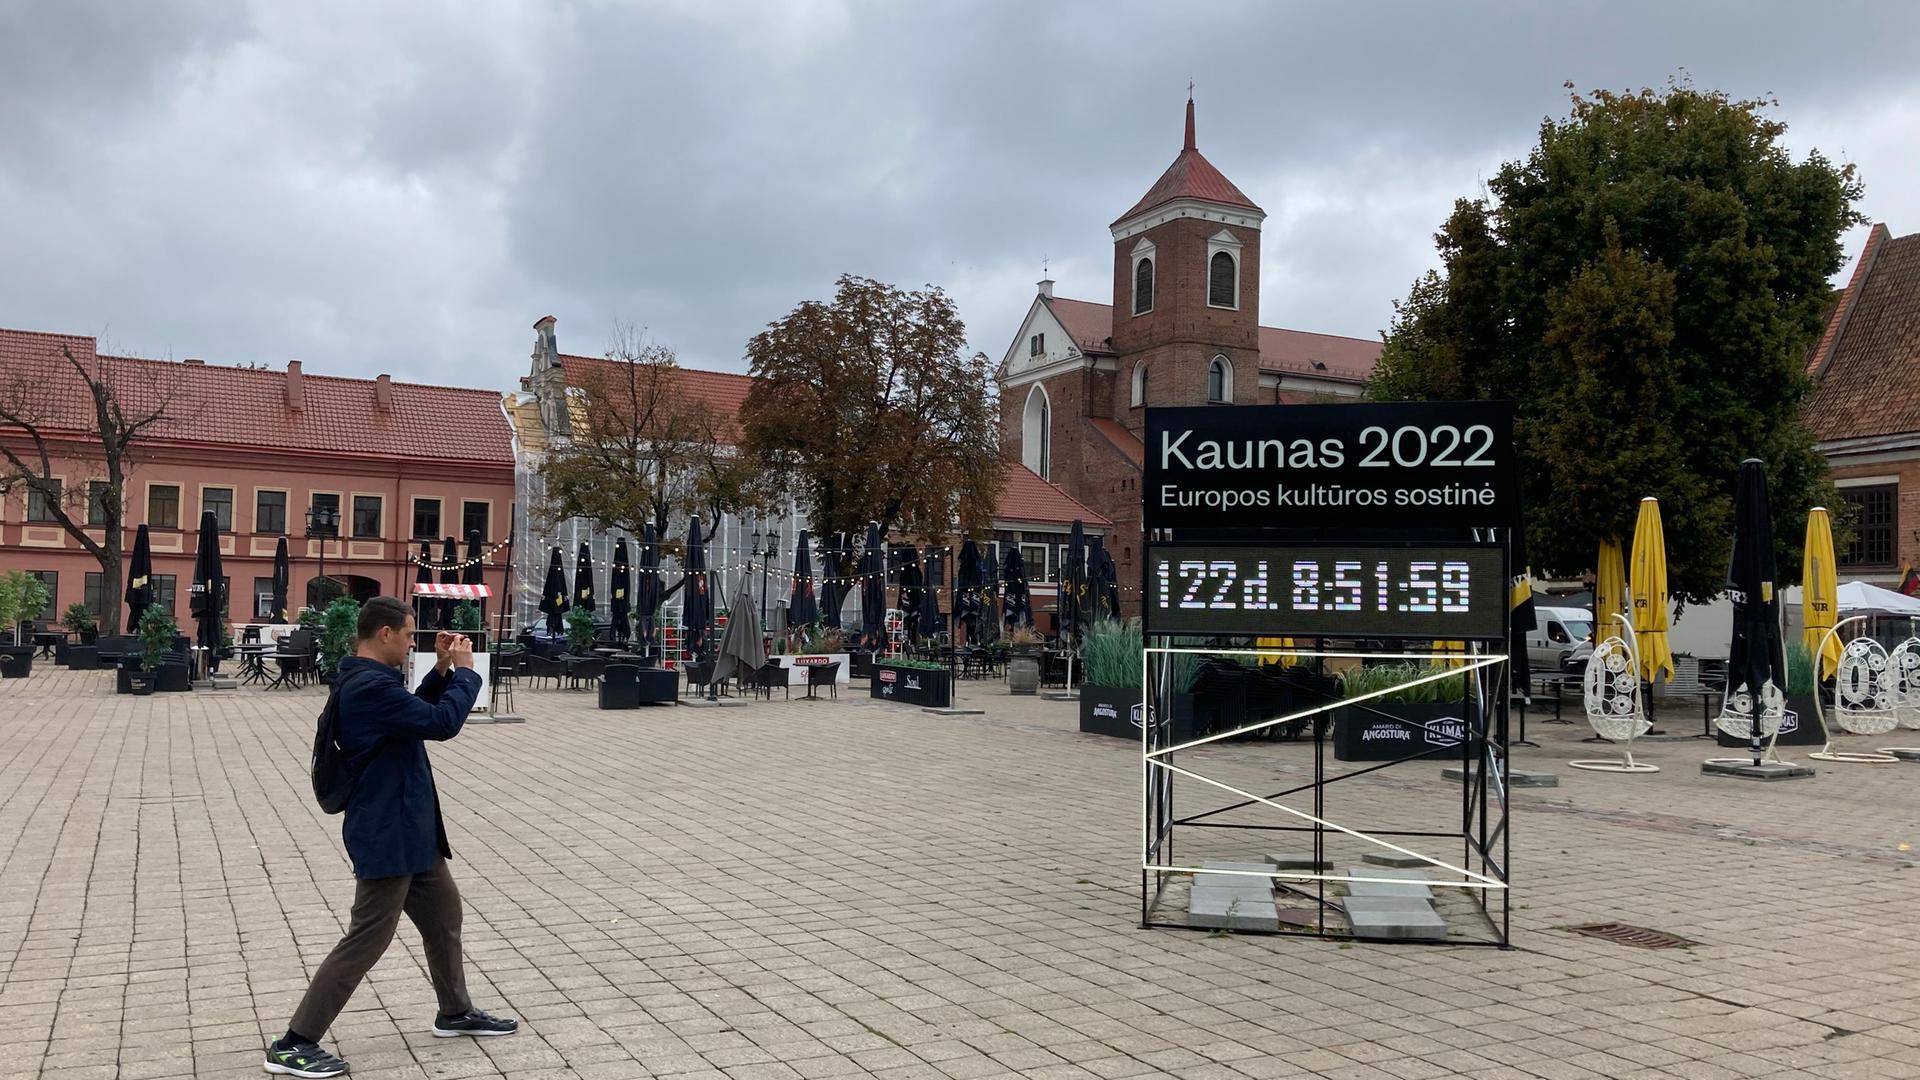 Ein Mann fotografiert eine Tafel mit der Aufschrift "Kaunas 2022" mit einem Countdown bis zum Beginn des Kulturhauptstadtjahres.